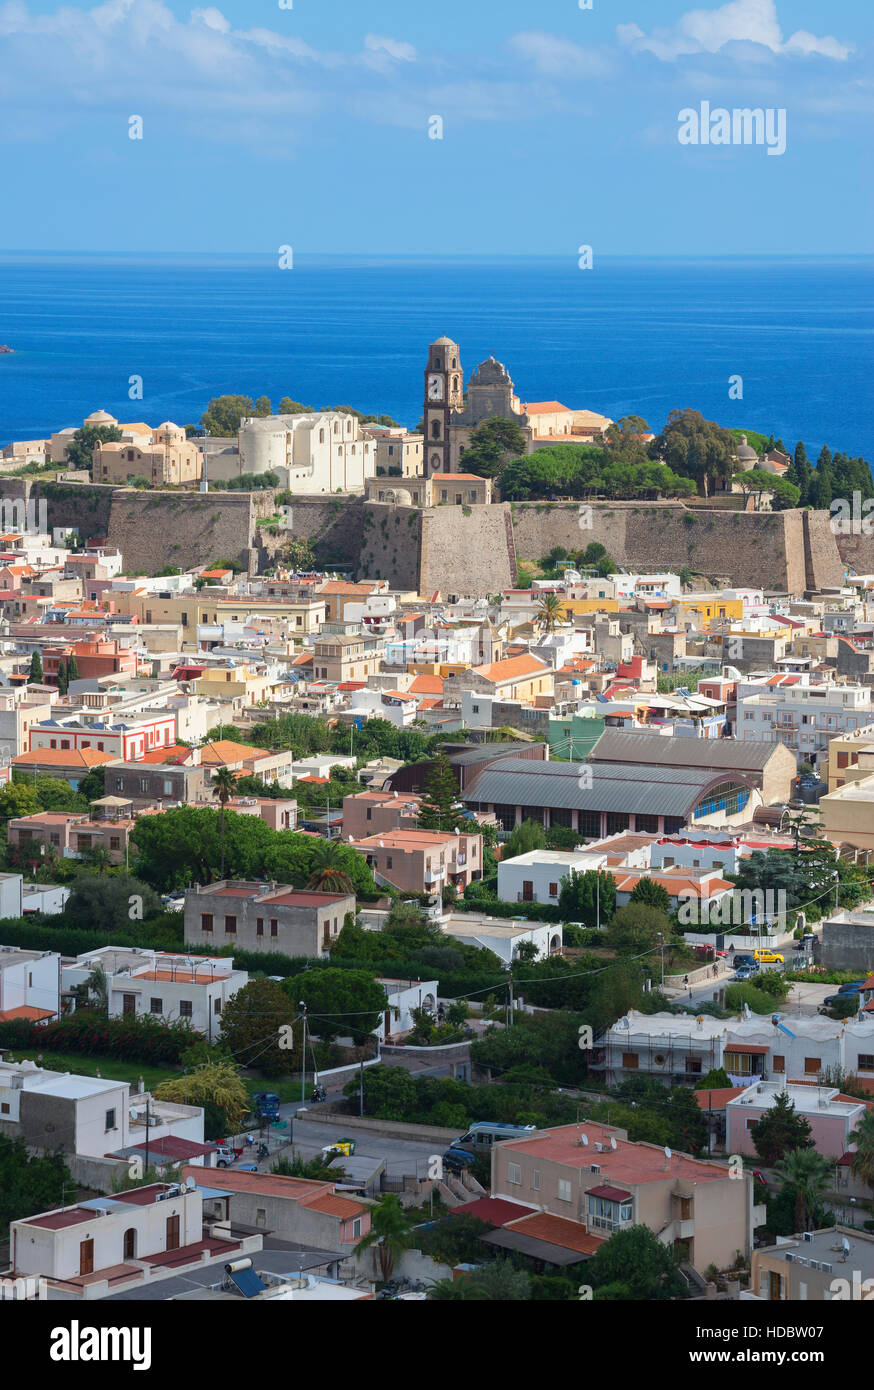 Stadt Lipari, Insel Lipari, Äolische Inseln, Italien Stockfoto